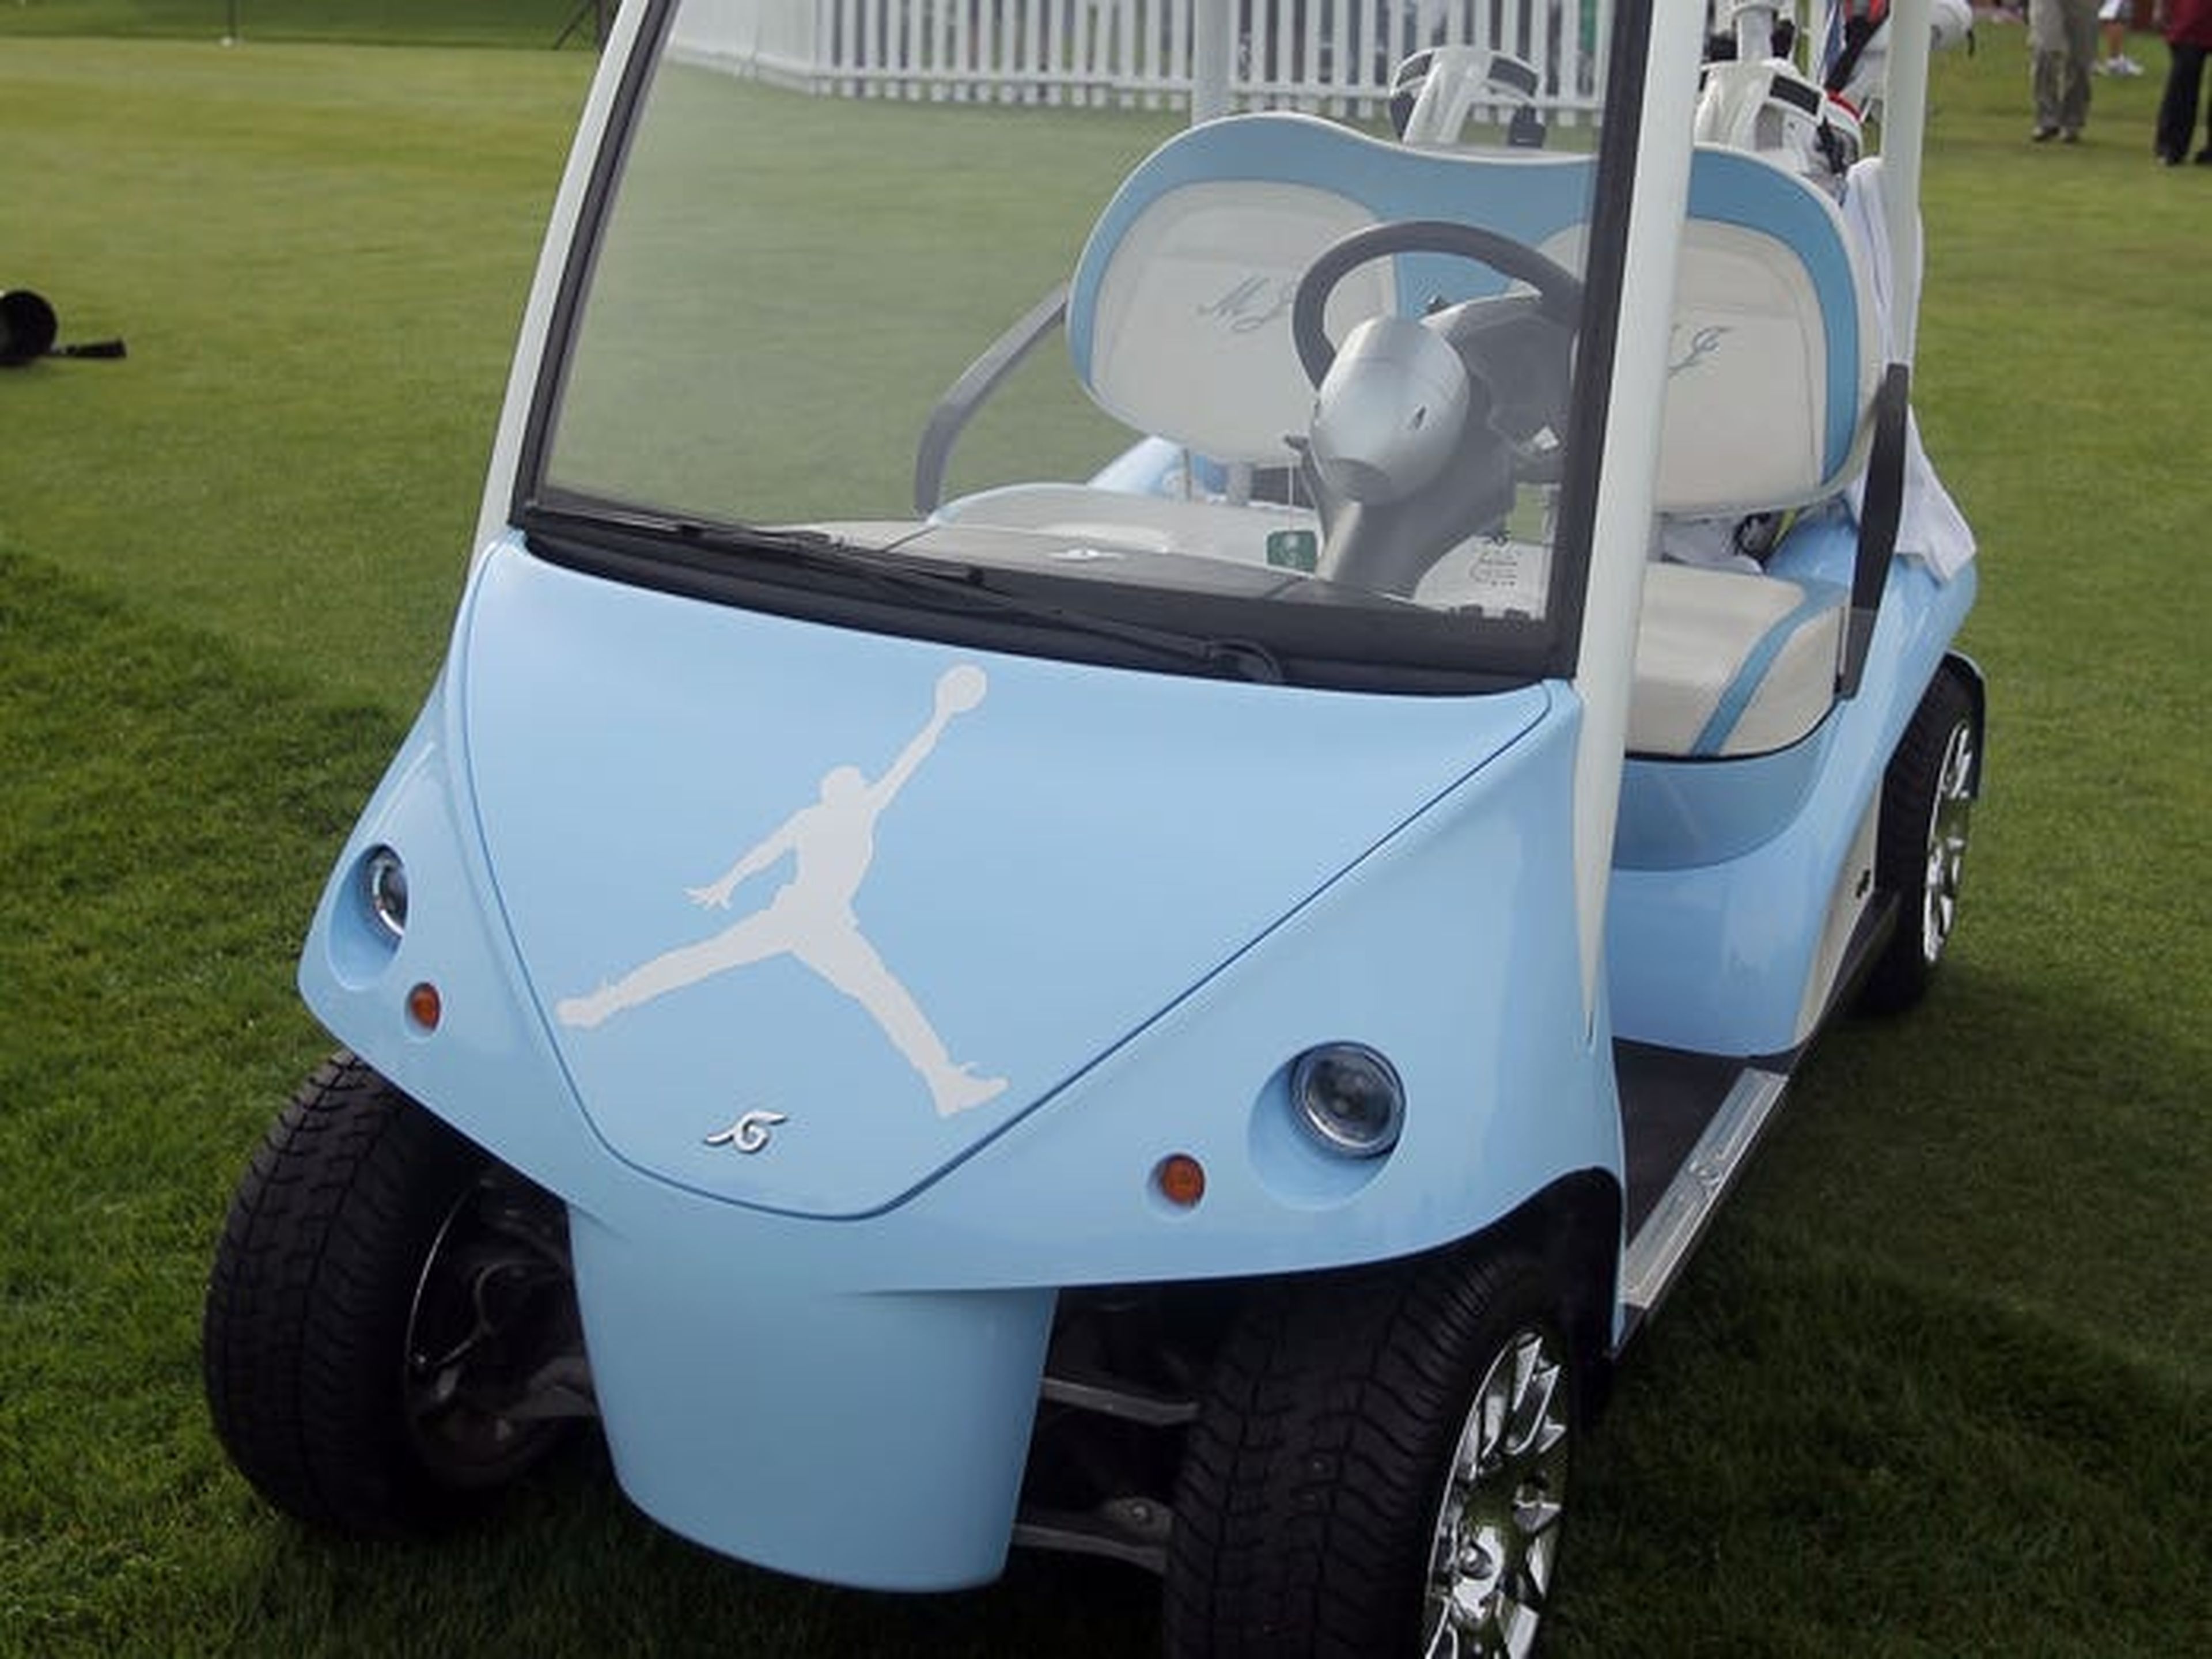 Jordan tiene incluso un carrito de golf personalizado azul Carolina con el logotipo de Jumpman.